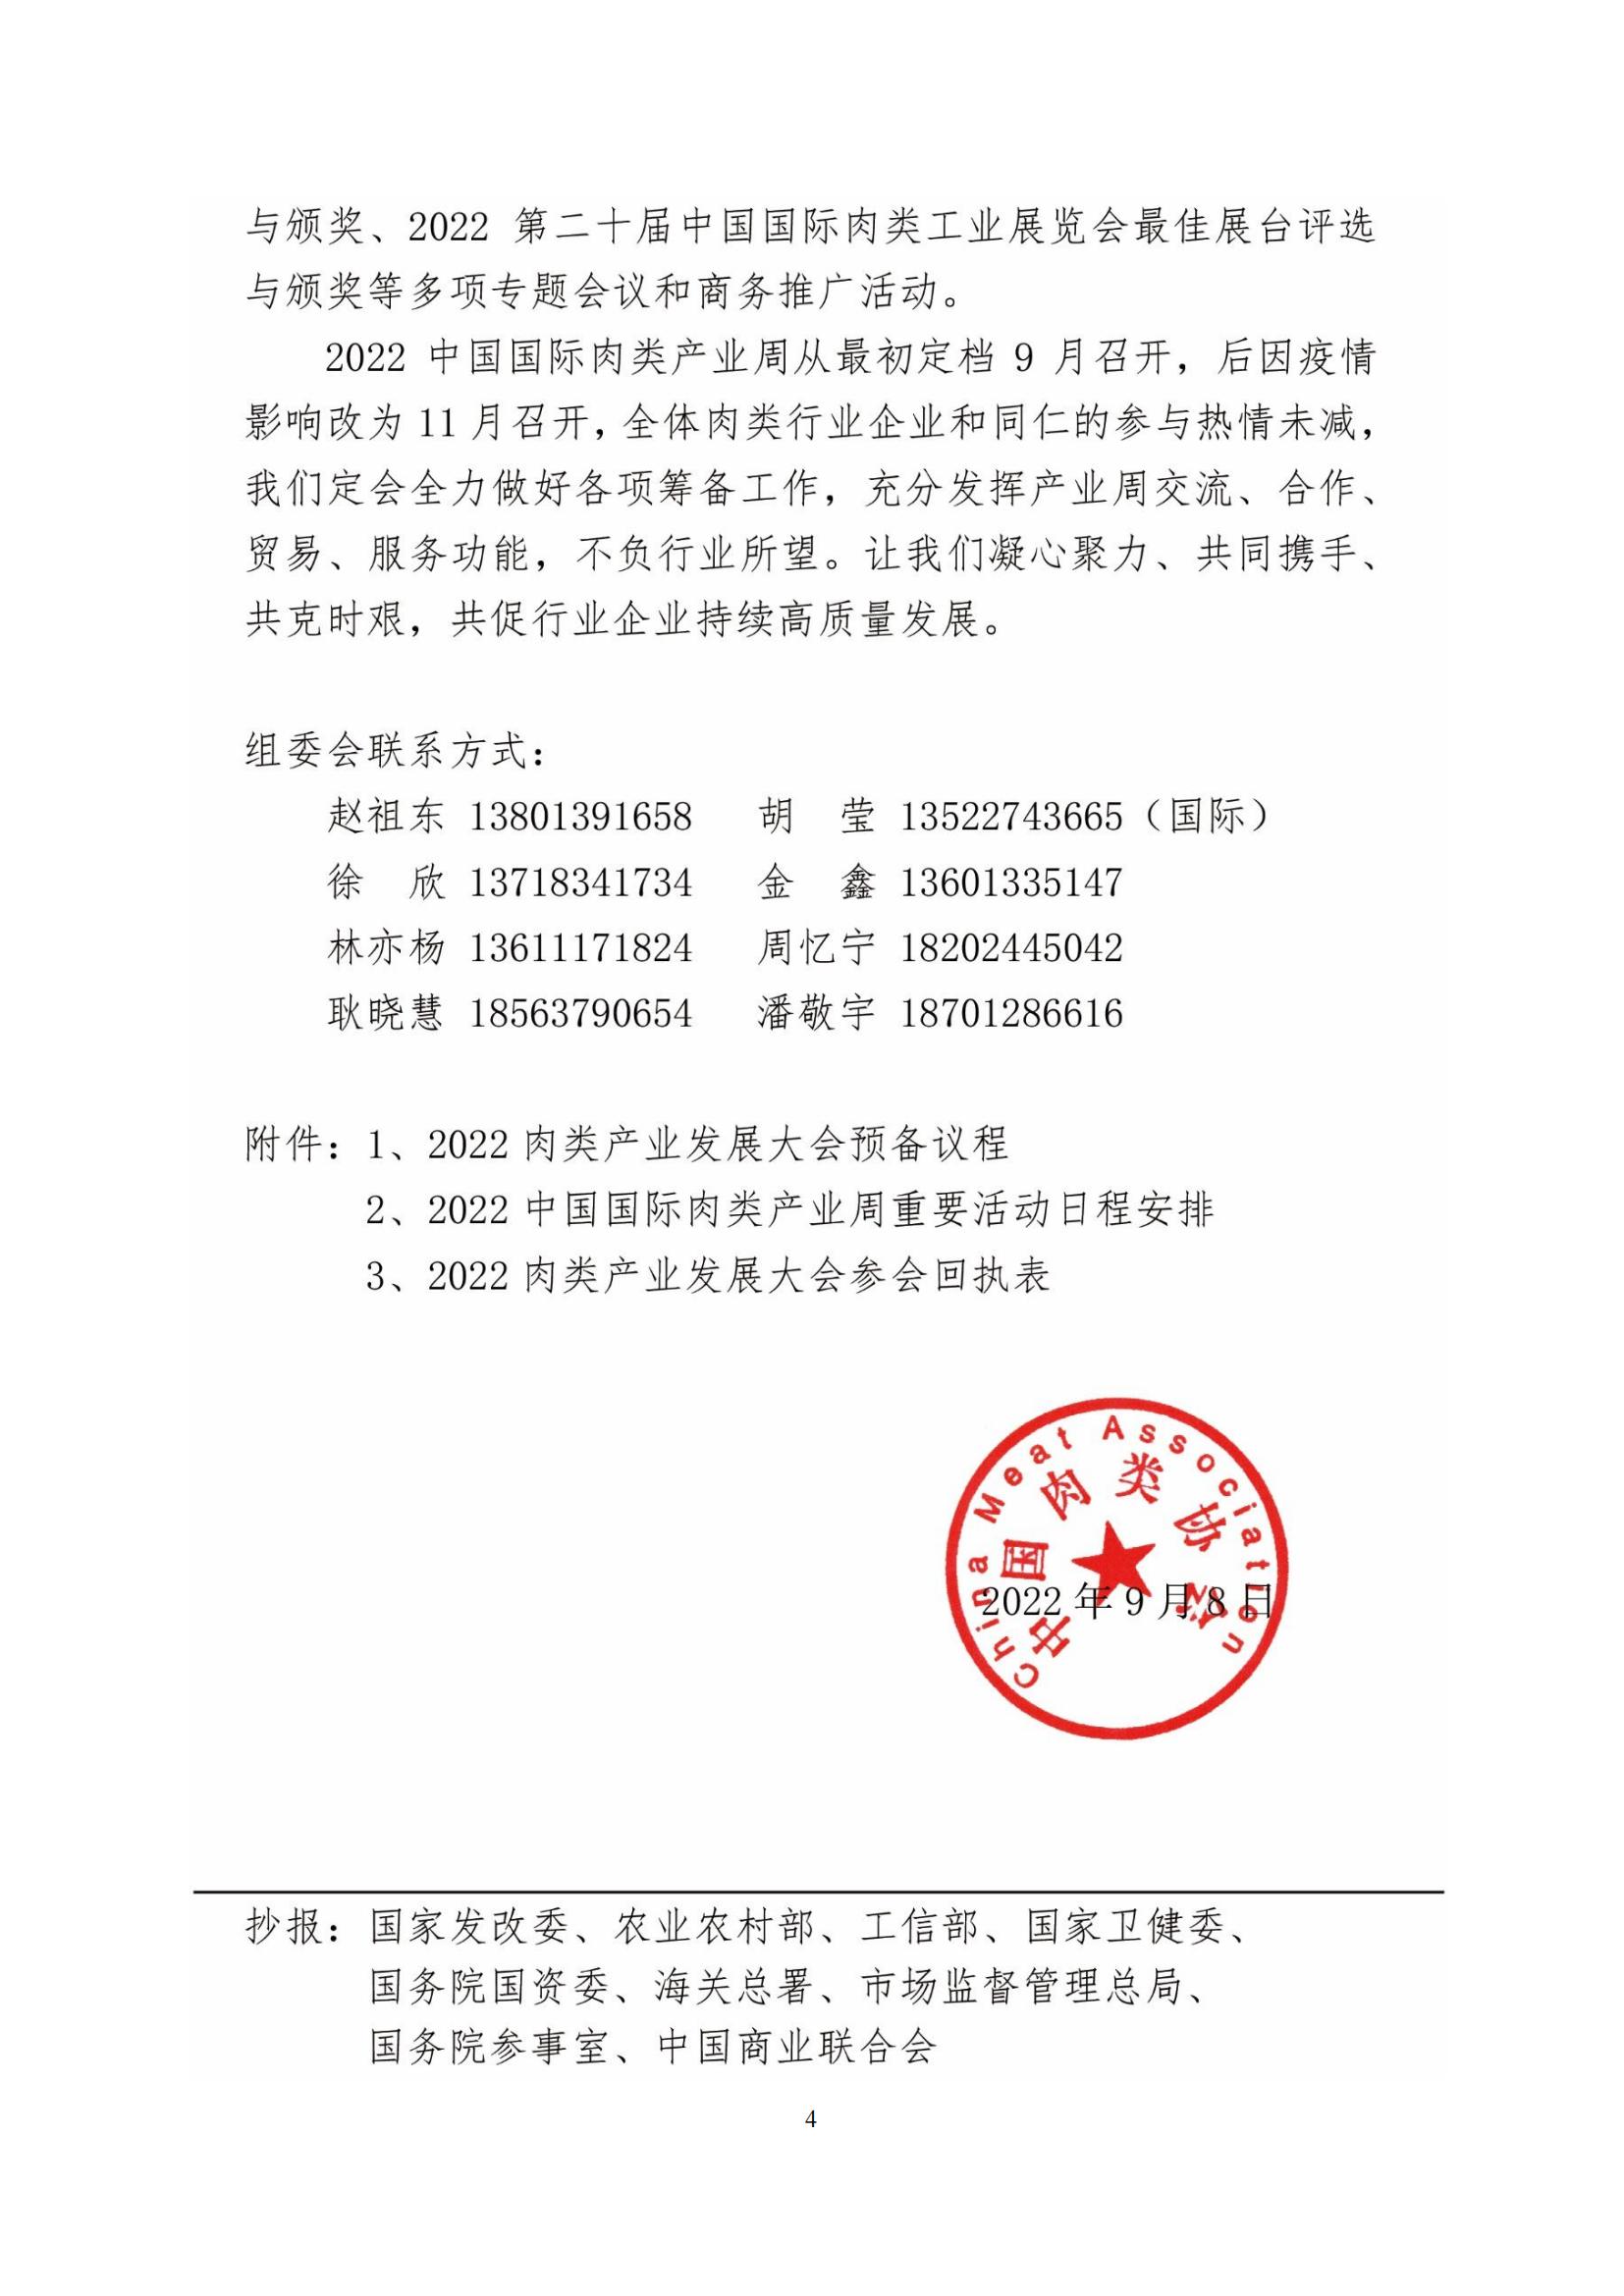 28号--2022中国国际肉类产业周正式通知_03.jpg